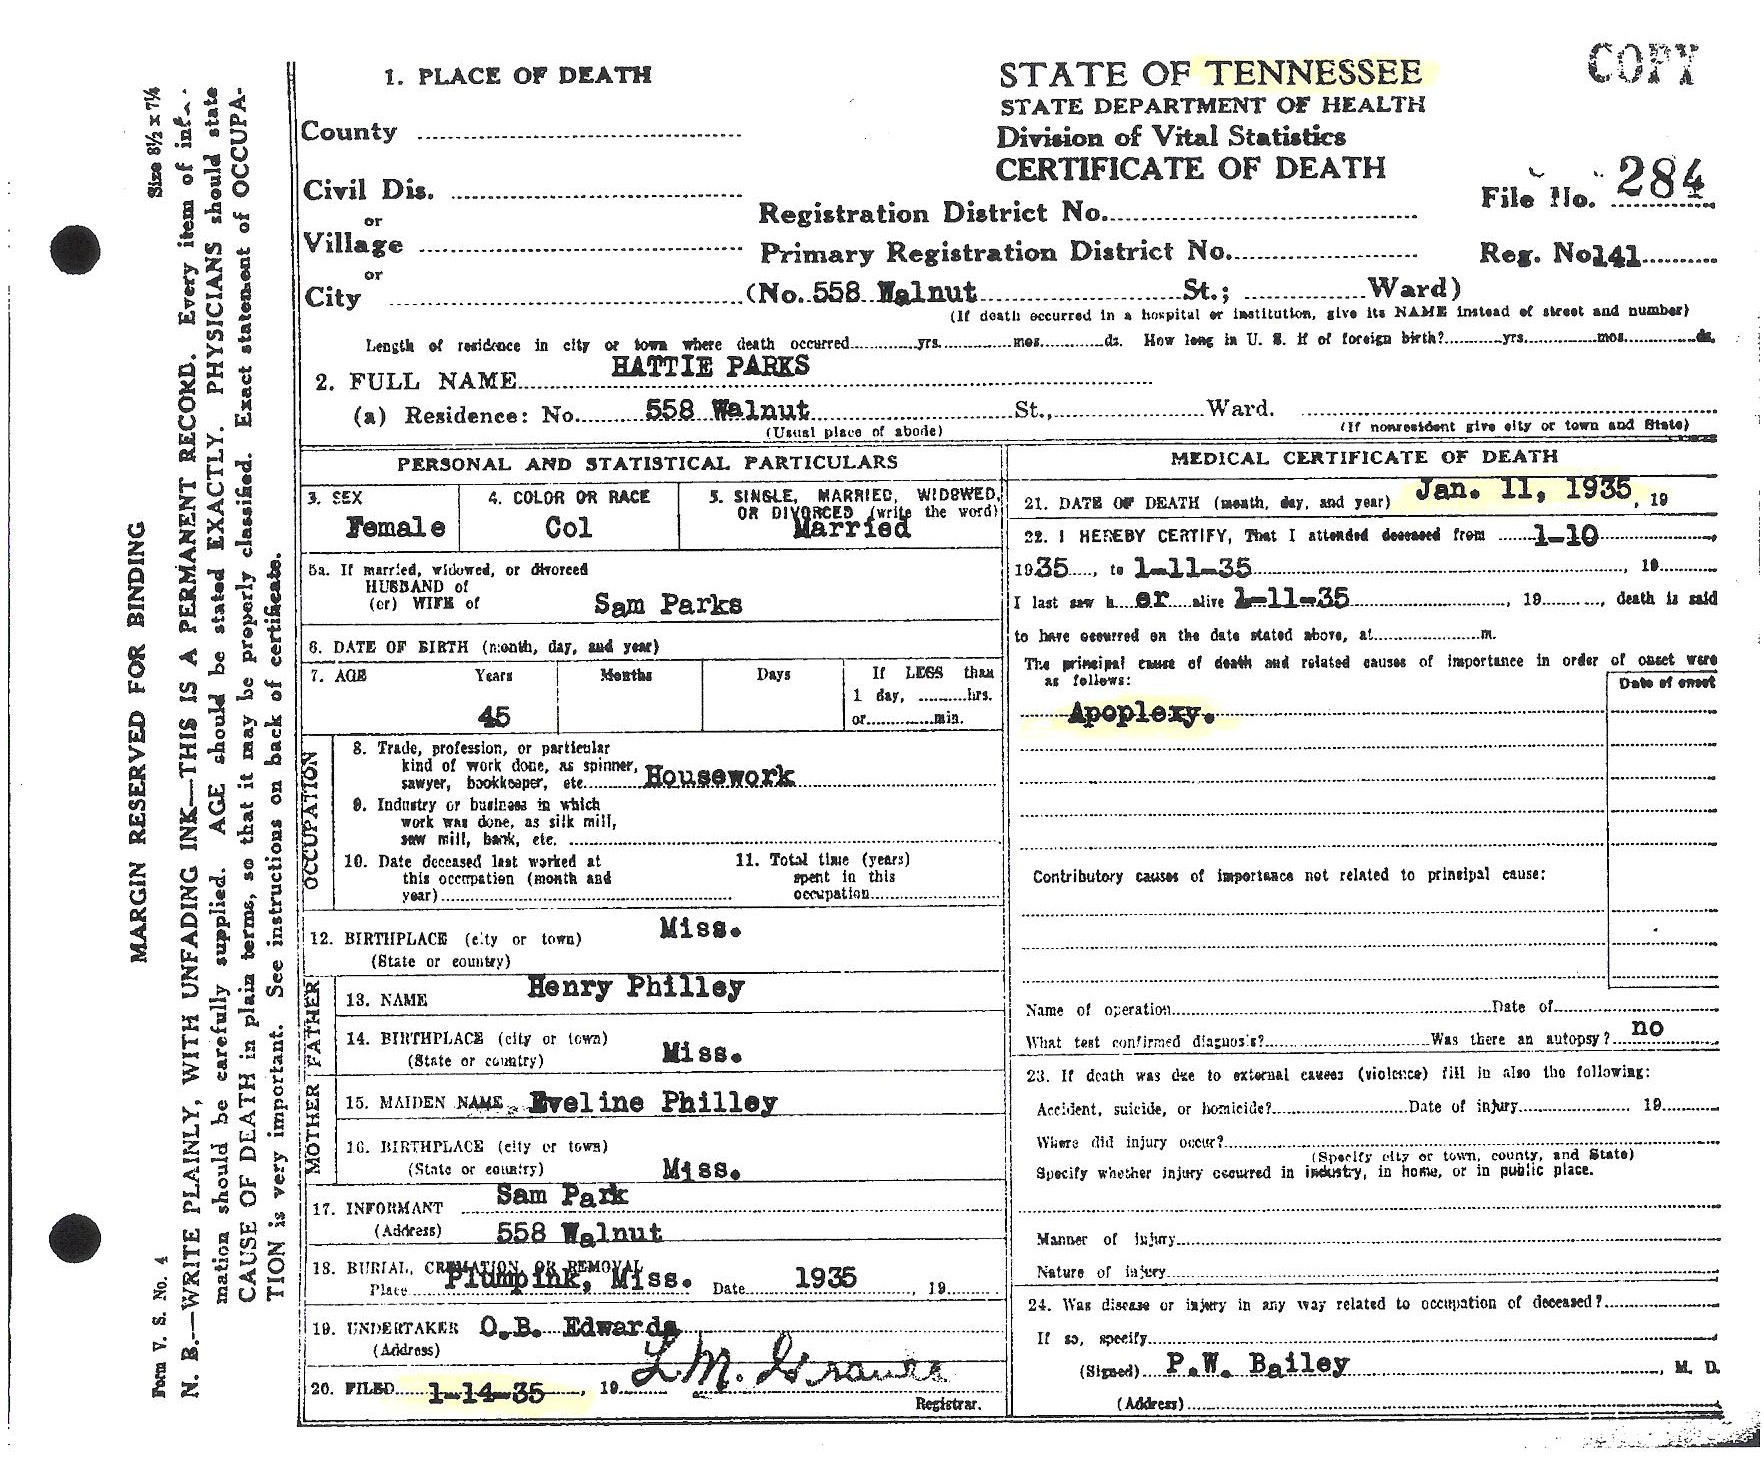 Hattie Phillips-Parks' Death Certificate